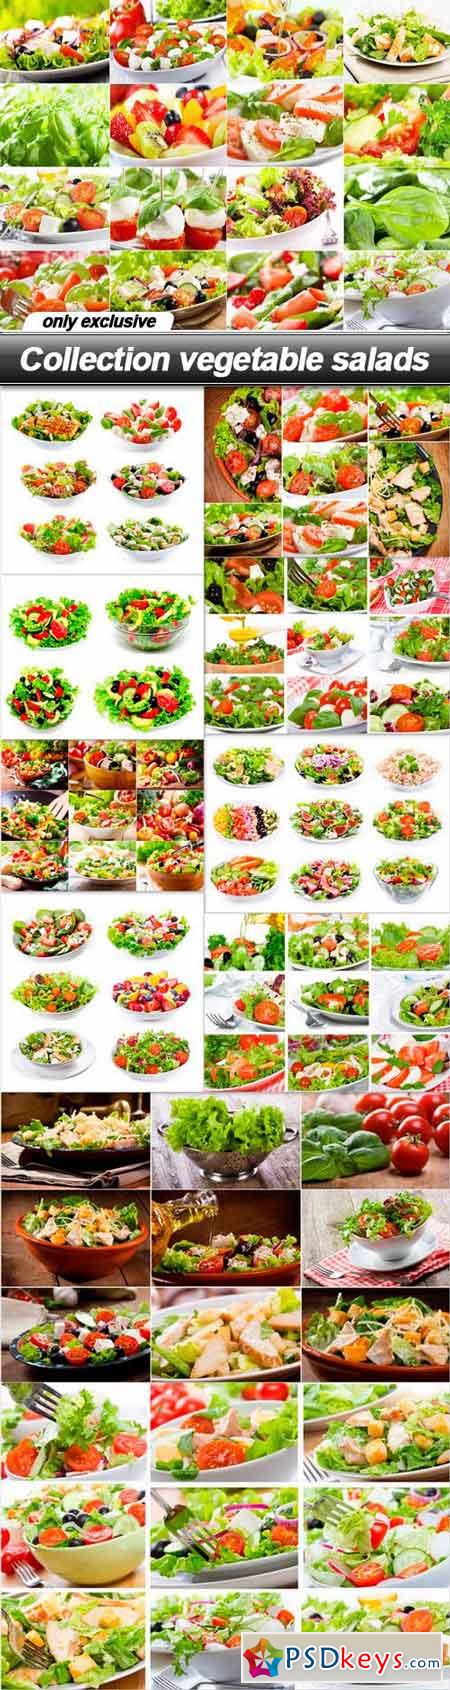 Collection vegetable salads - 11 UHQ JPEG